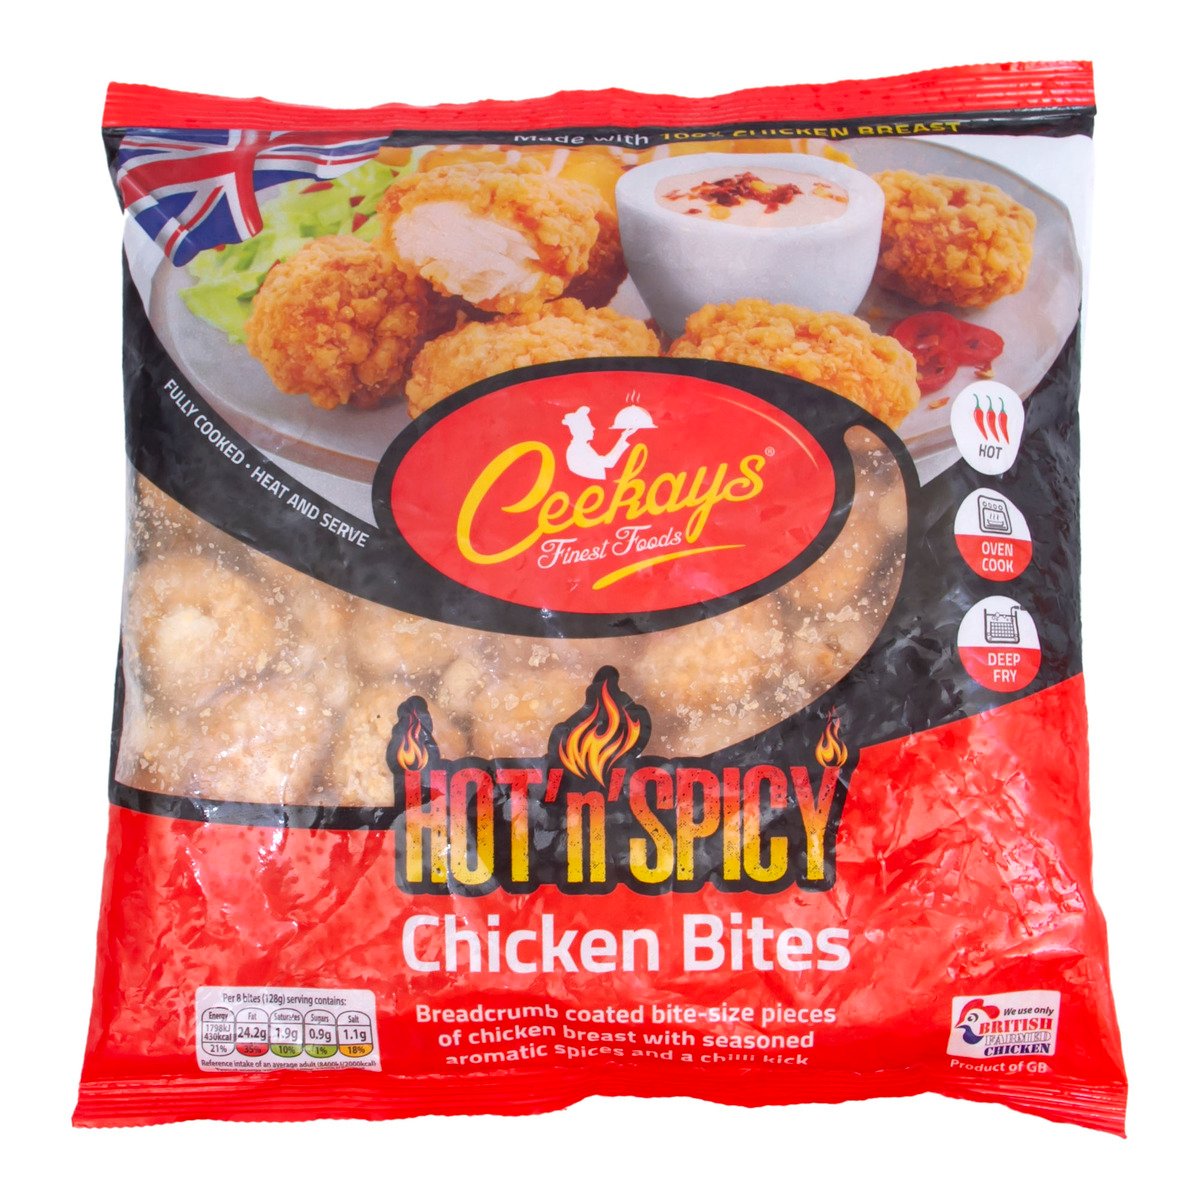 Ceekay's Hot n Spicy Chicken Bites 500 g